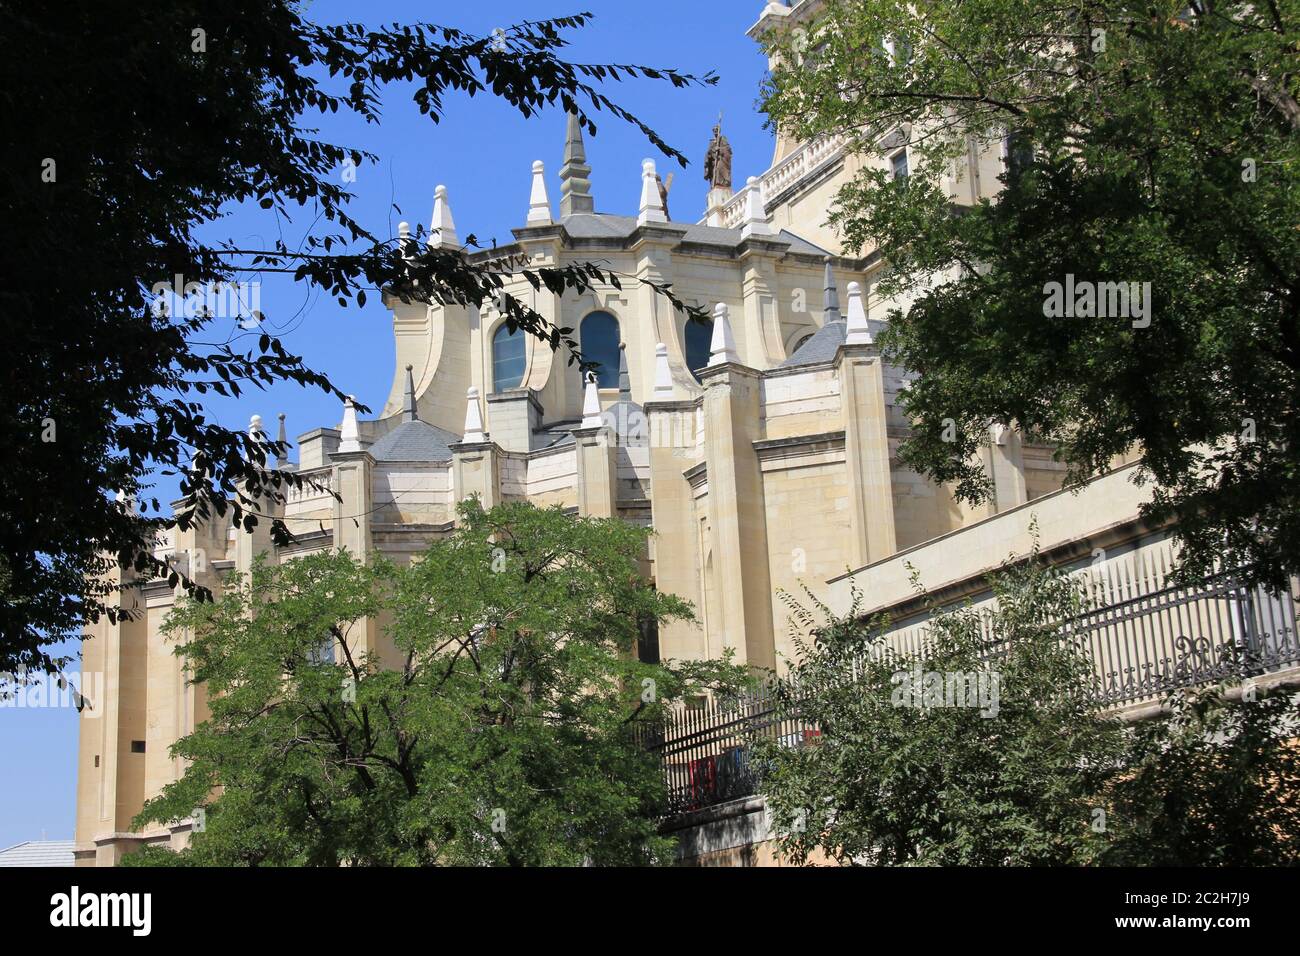 La cathédrale d'Almudena à Madrid, Espagne Banque D'Images